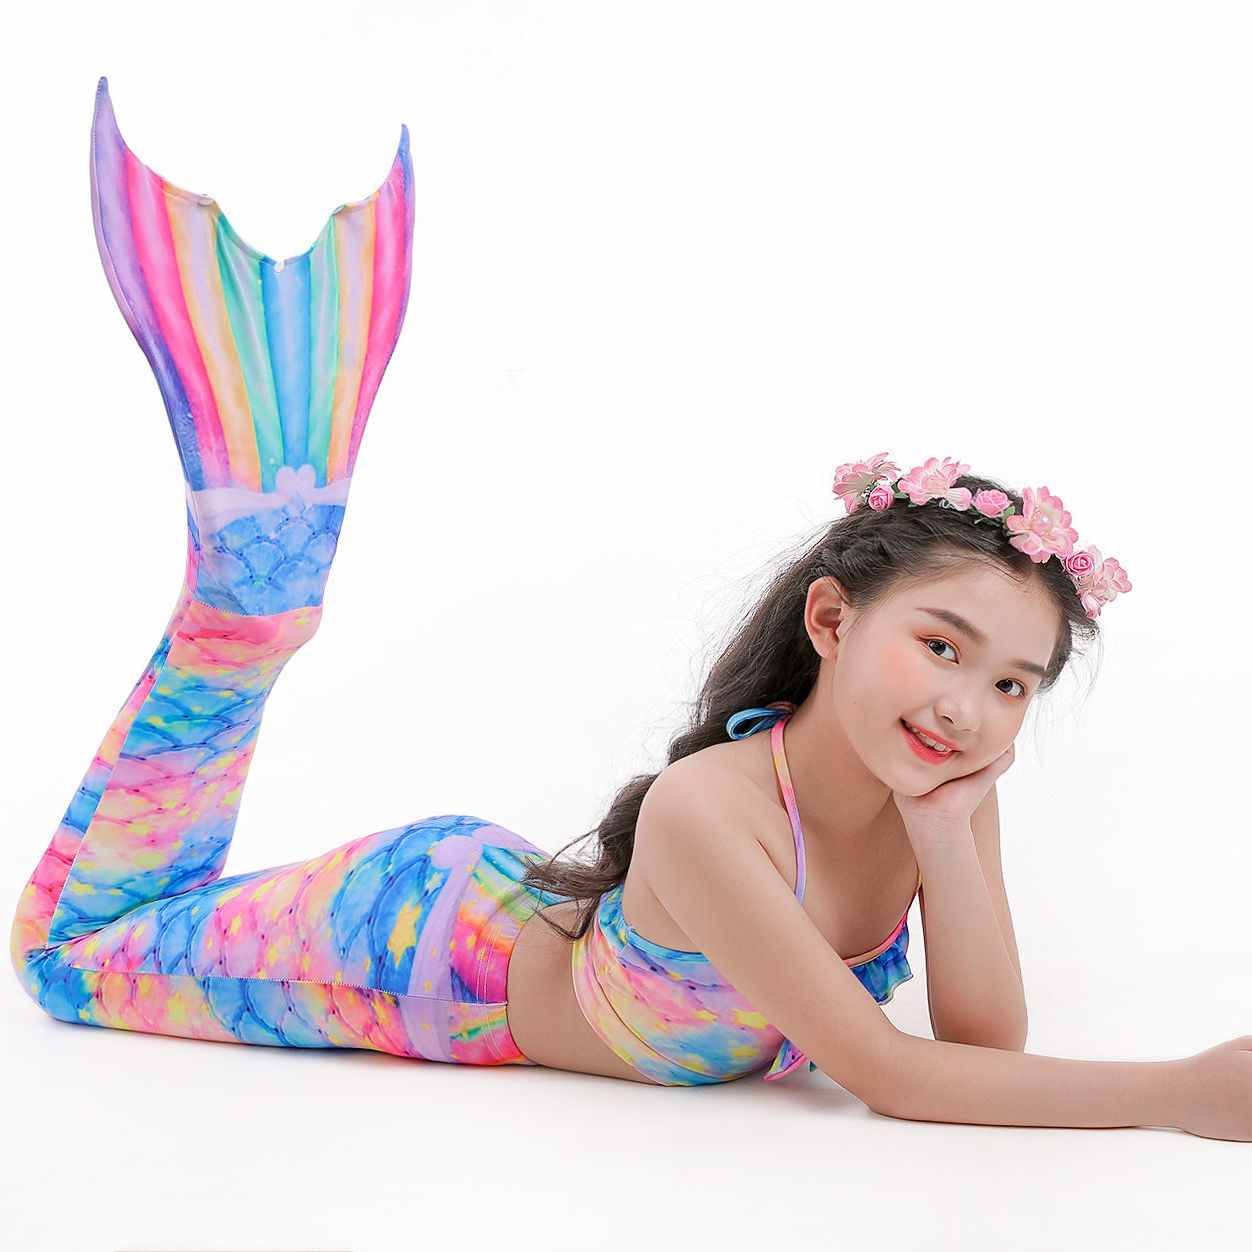 New children's Mermaid swimsuit Mermaid tail girls set girls swimming bikini split swimsuit